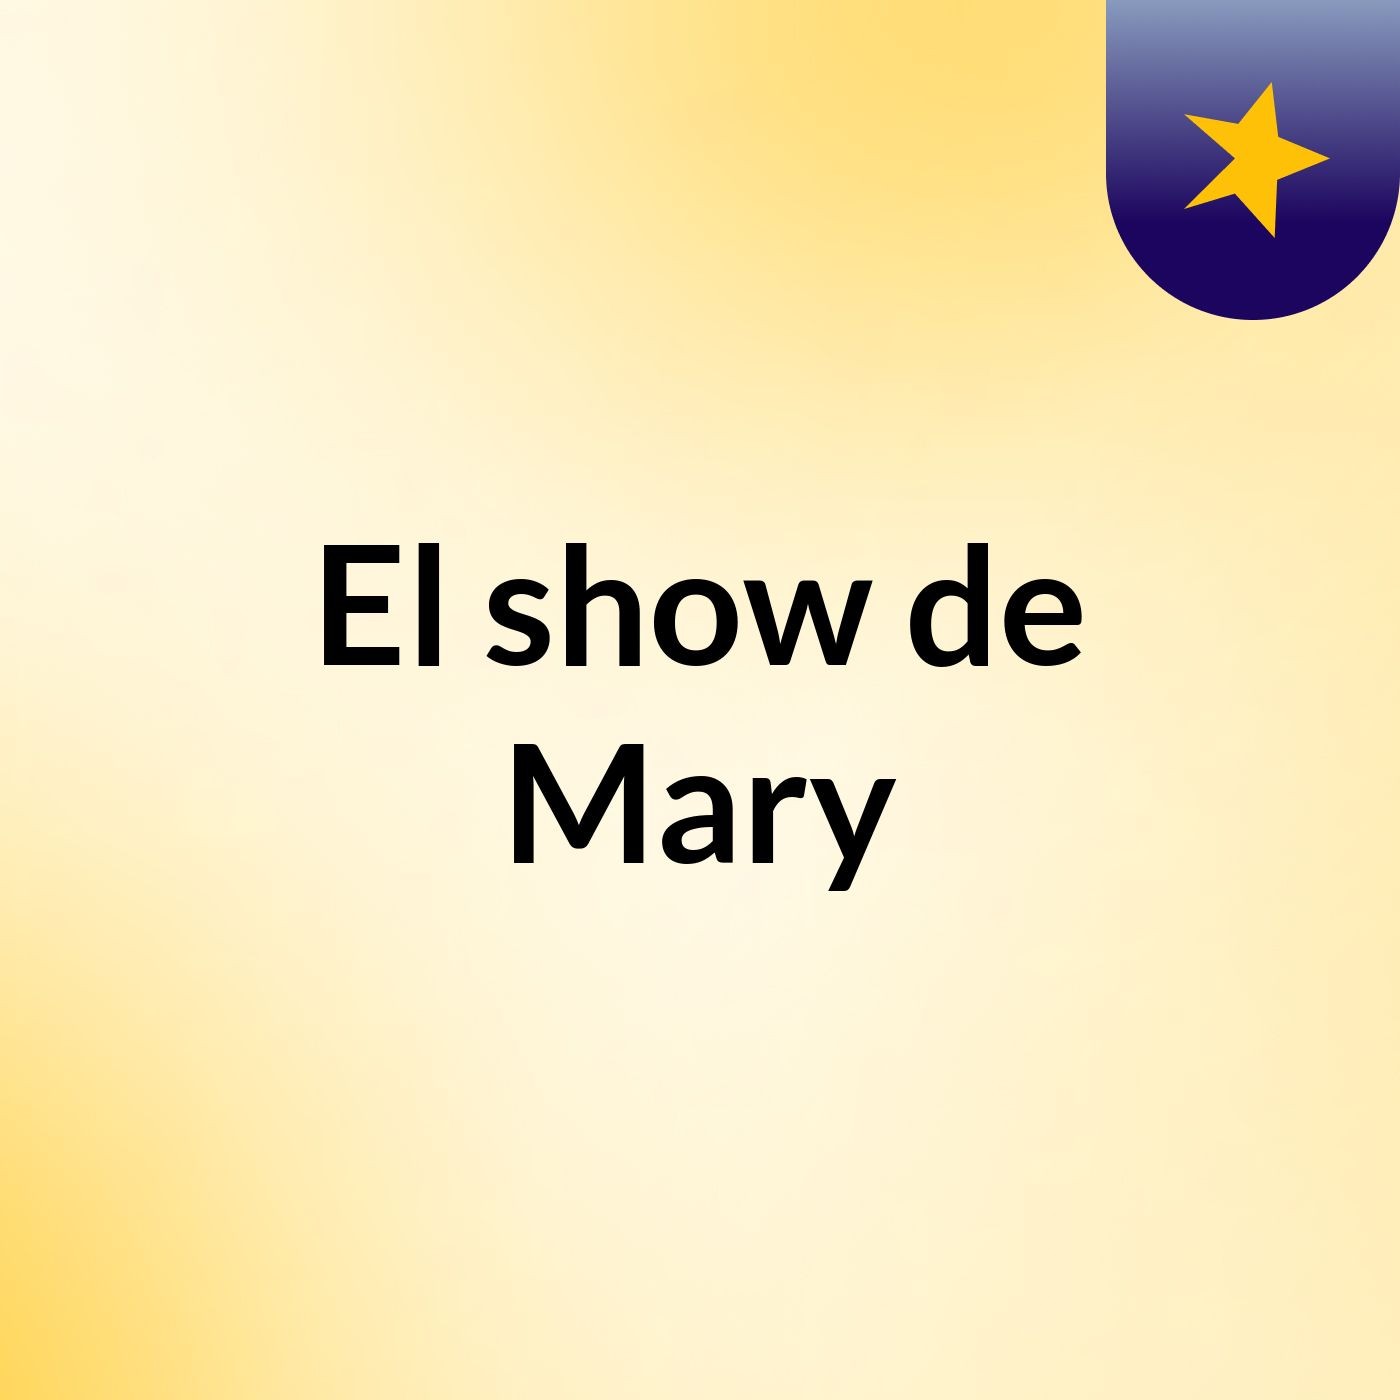 El show de Mary